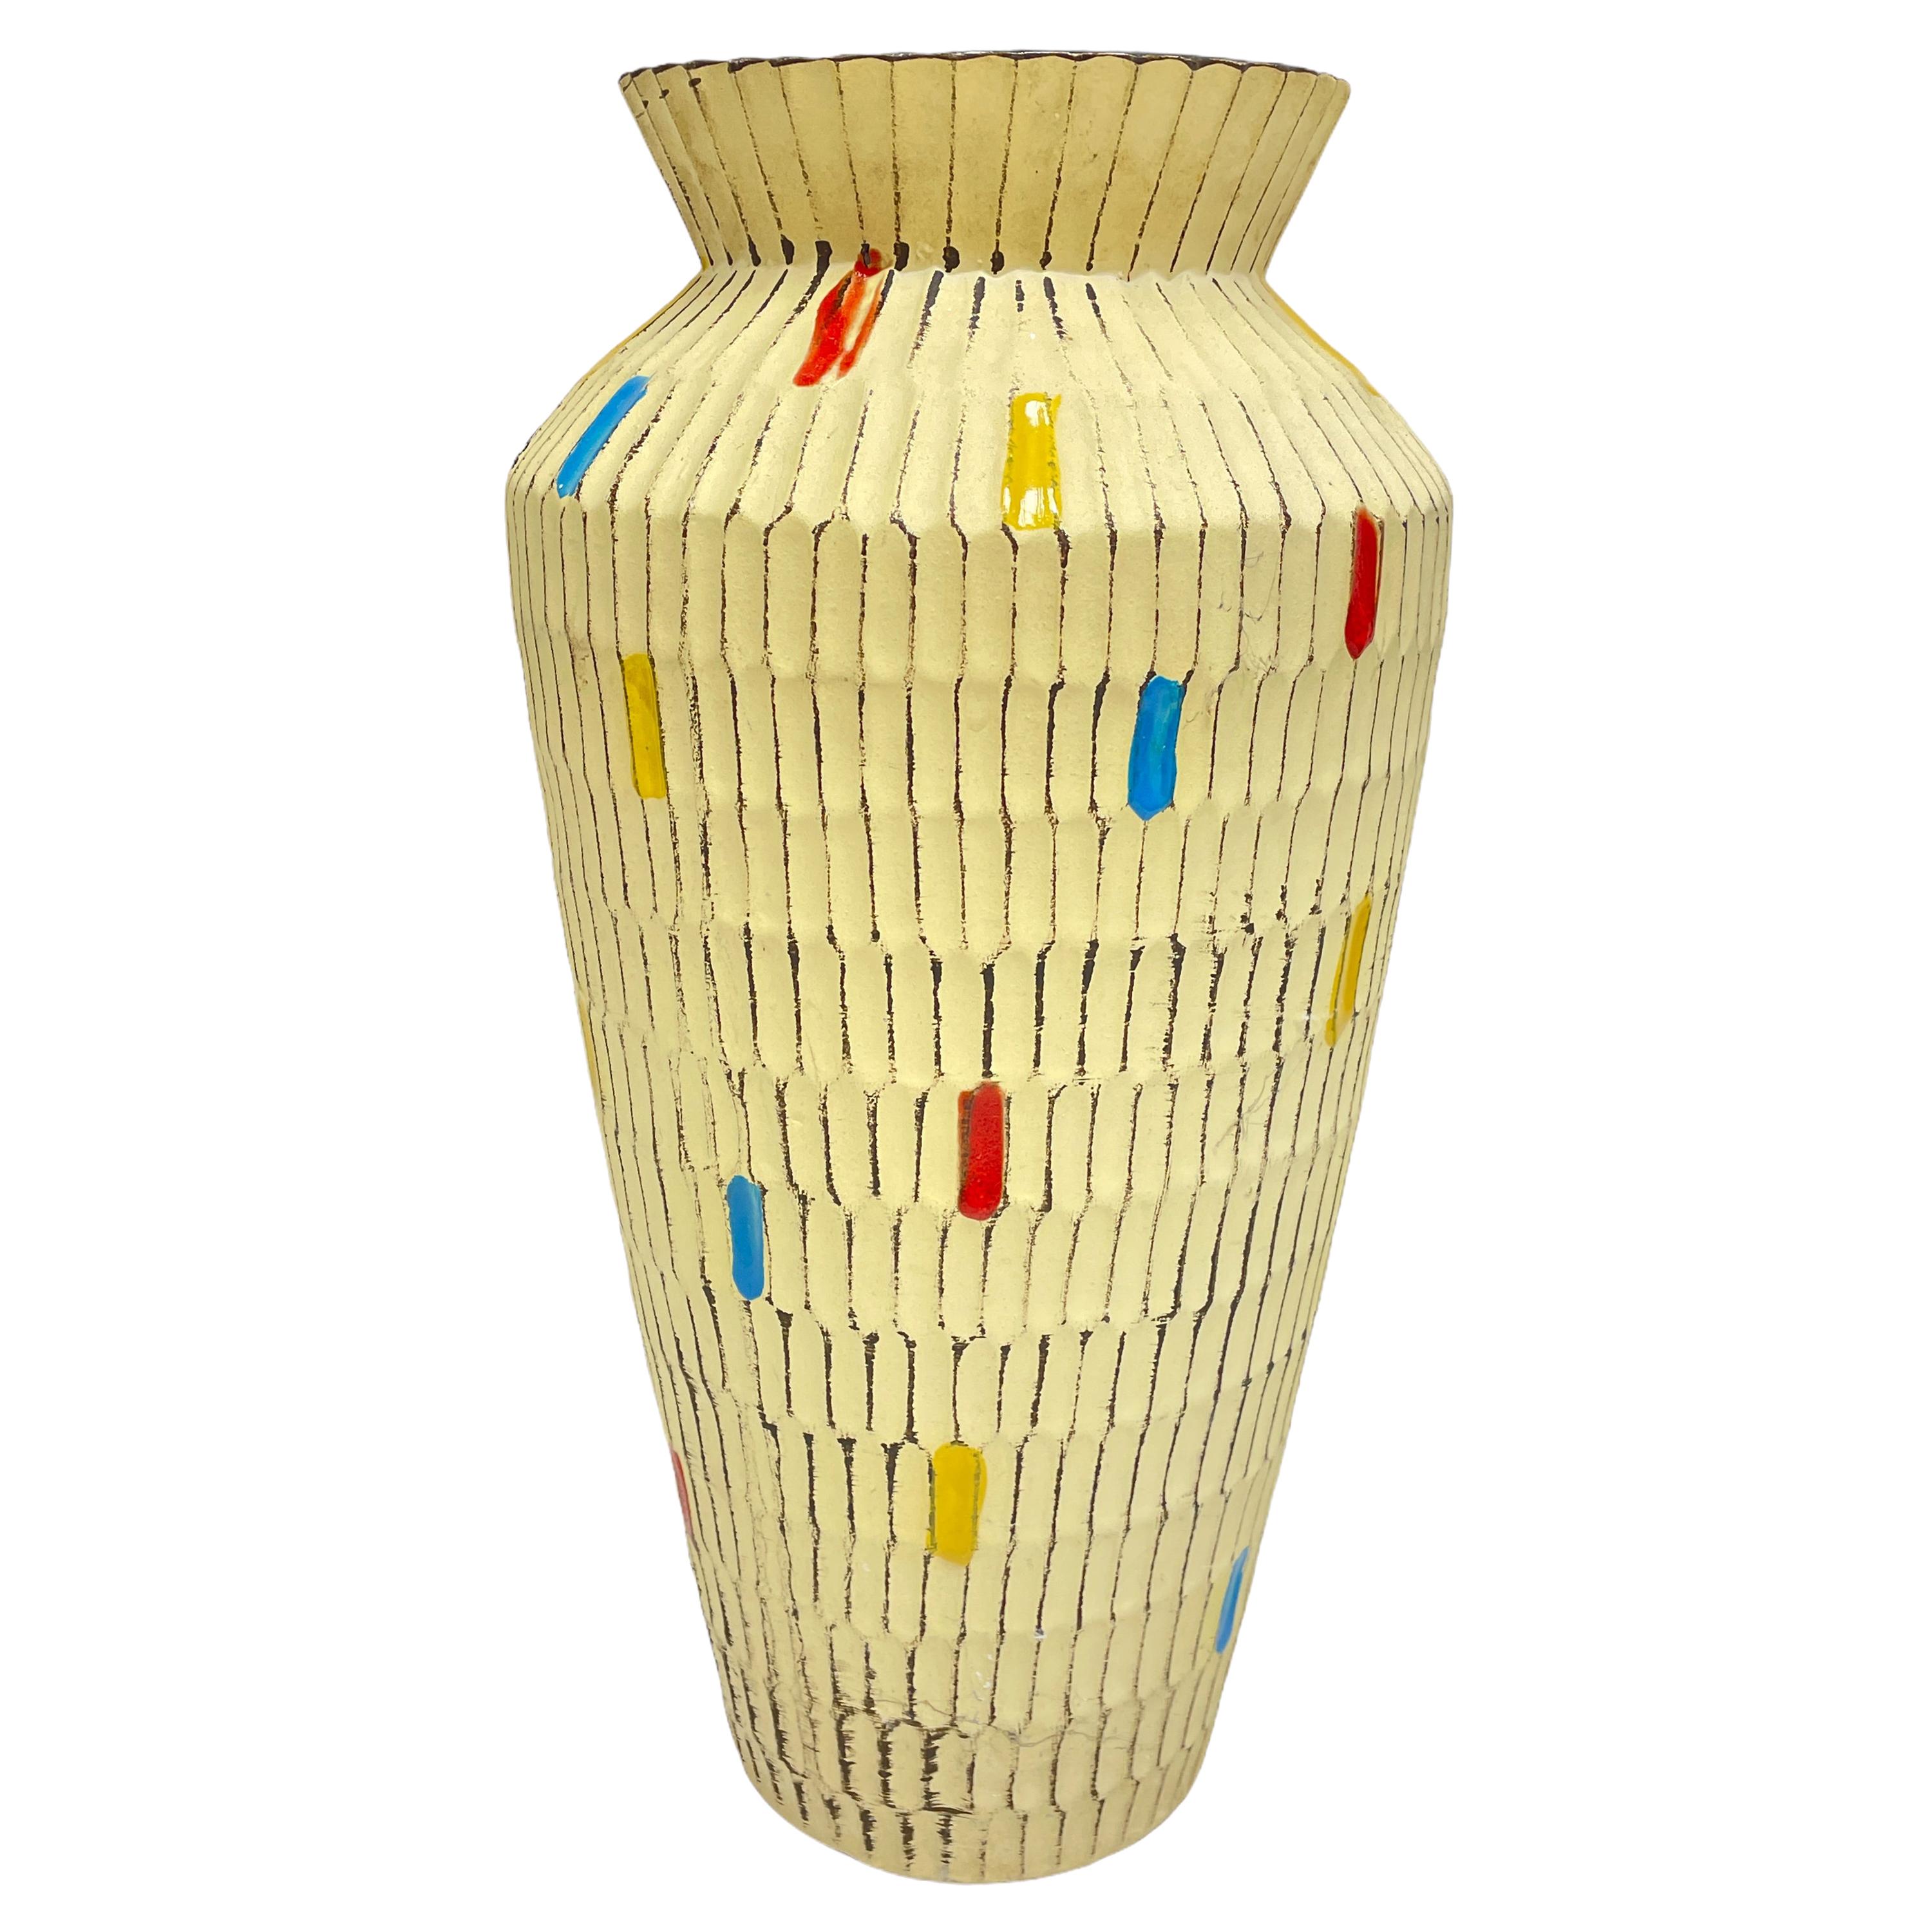 Stunning German Midcentury Pottery Ceramic Vase 1950s Mid-Century Modern